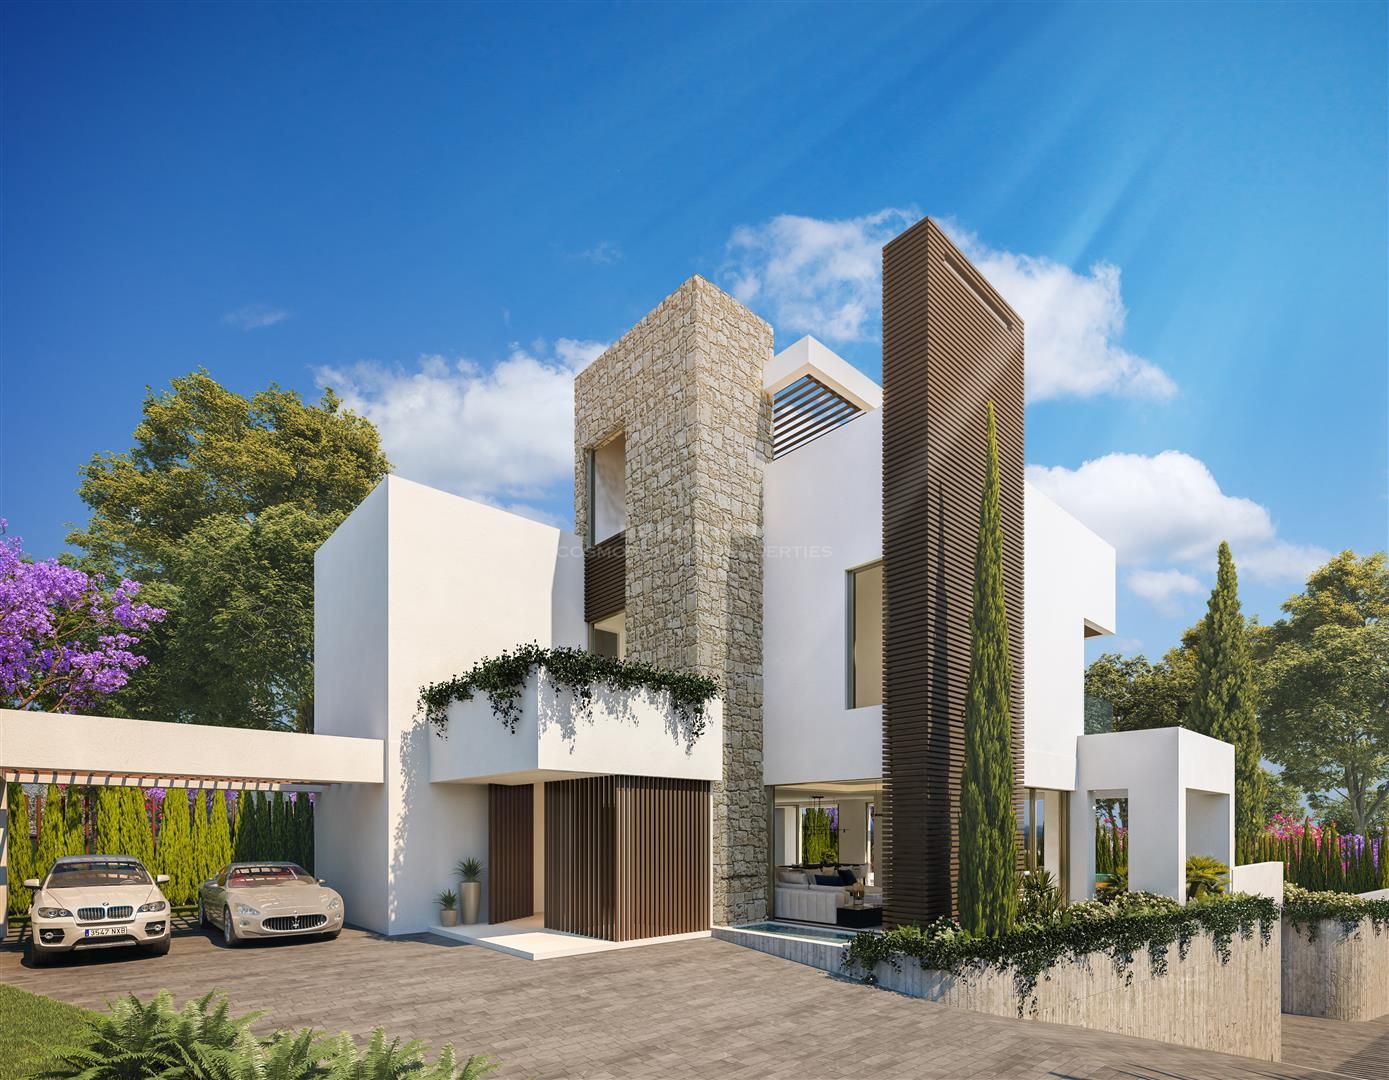 Espectacular promoción de villa de estilo moderno nueva a estrenar a unos pasos de playa, en el centro de Marbella